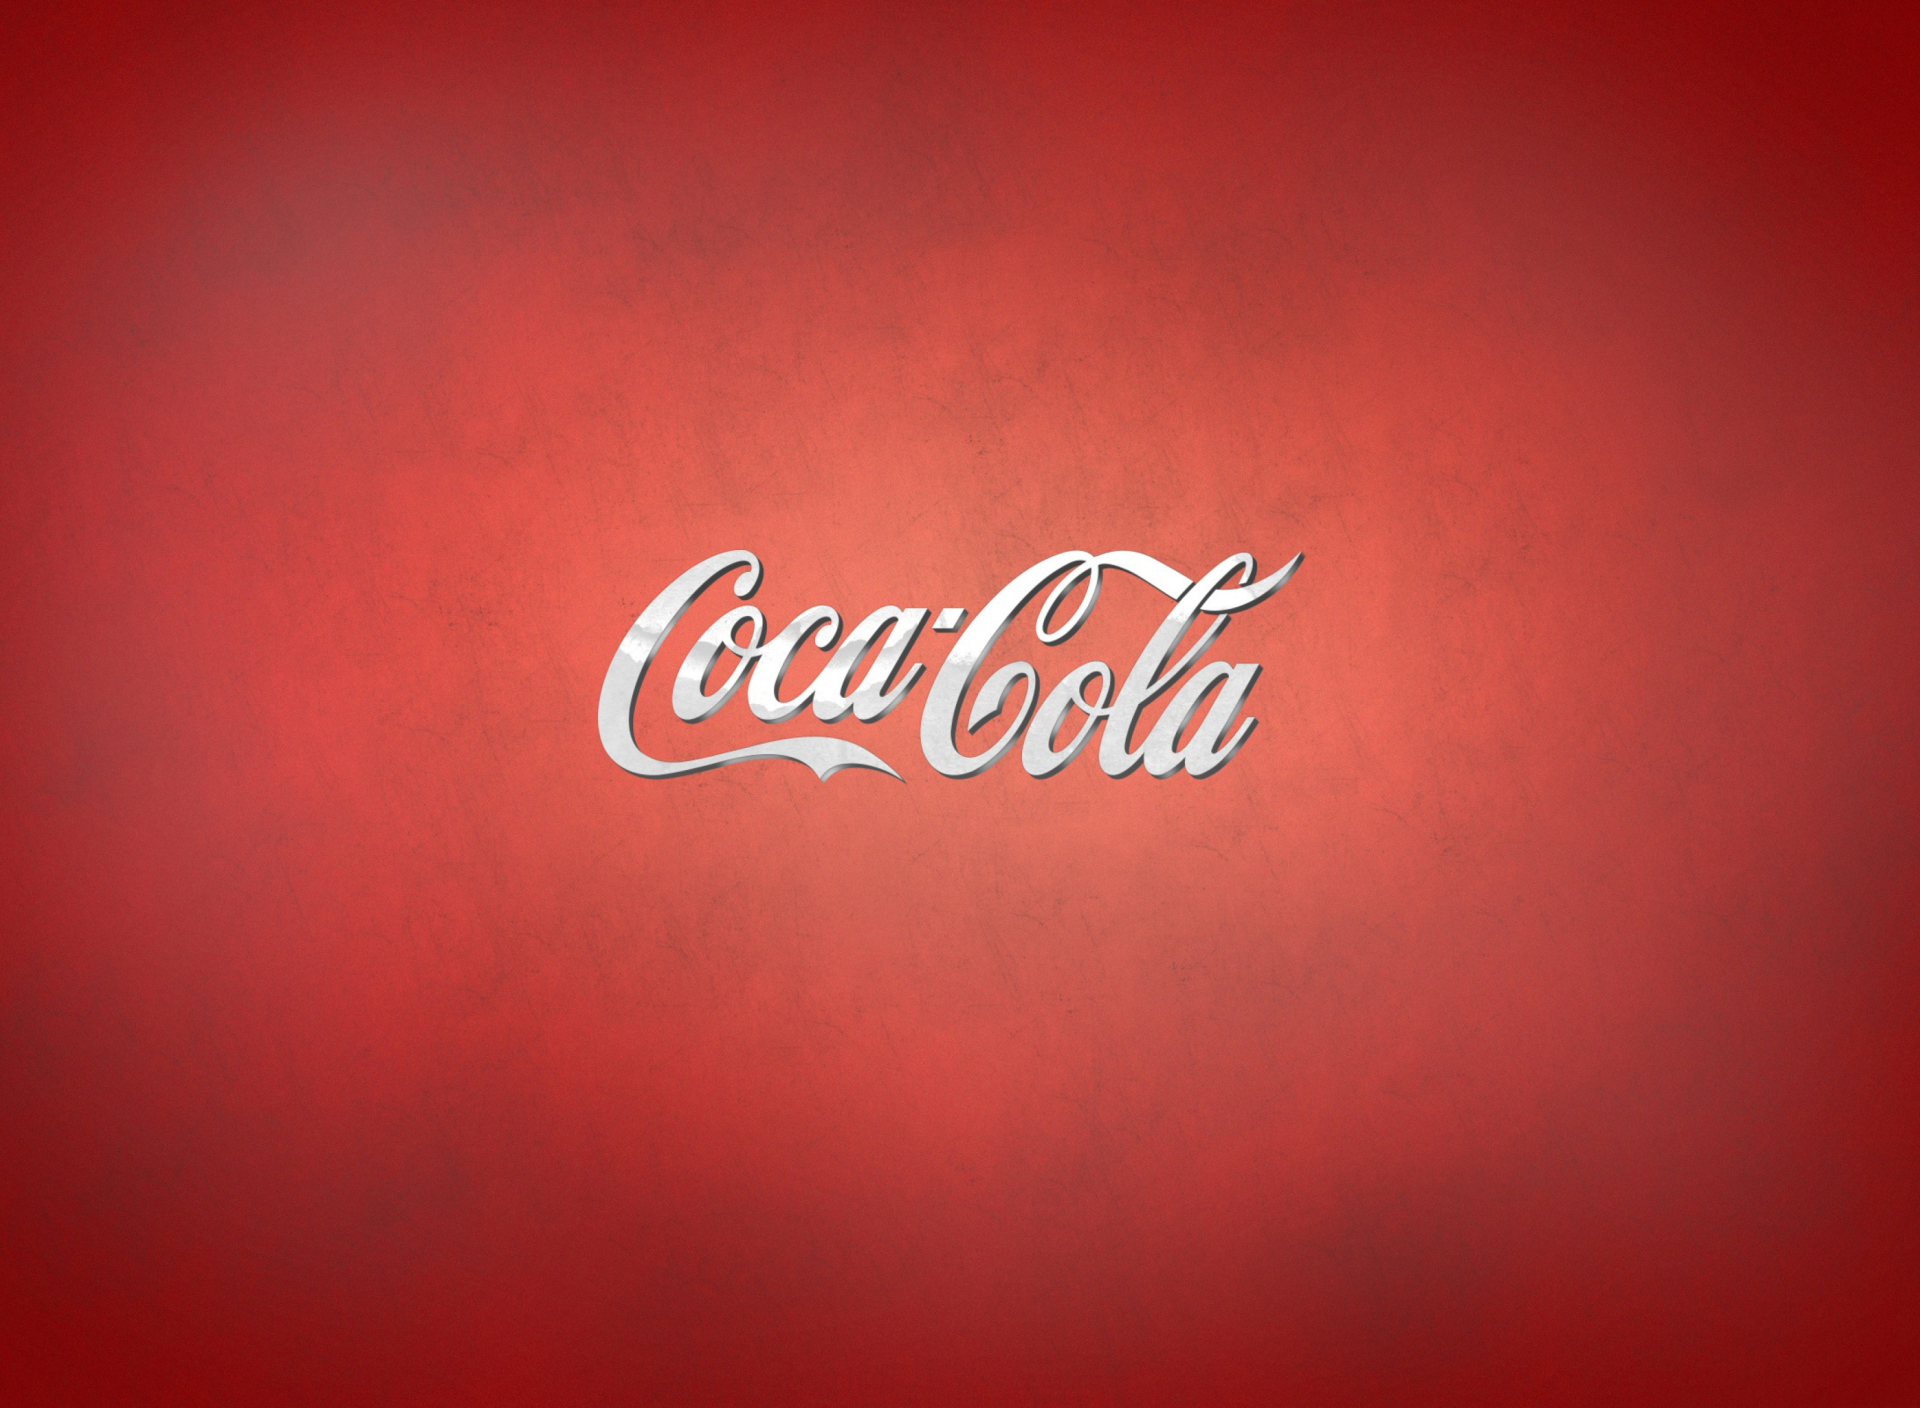 Coca Cola Brand wallpaper 1920x1408